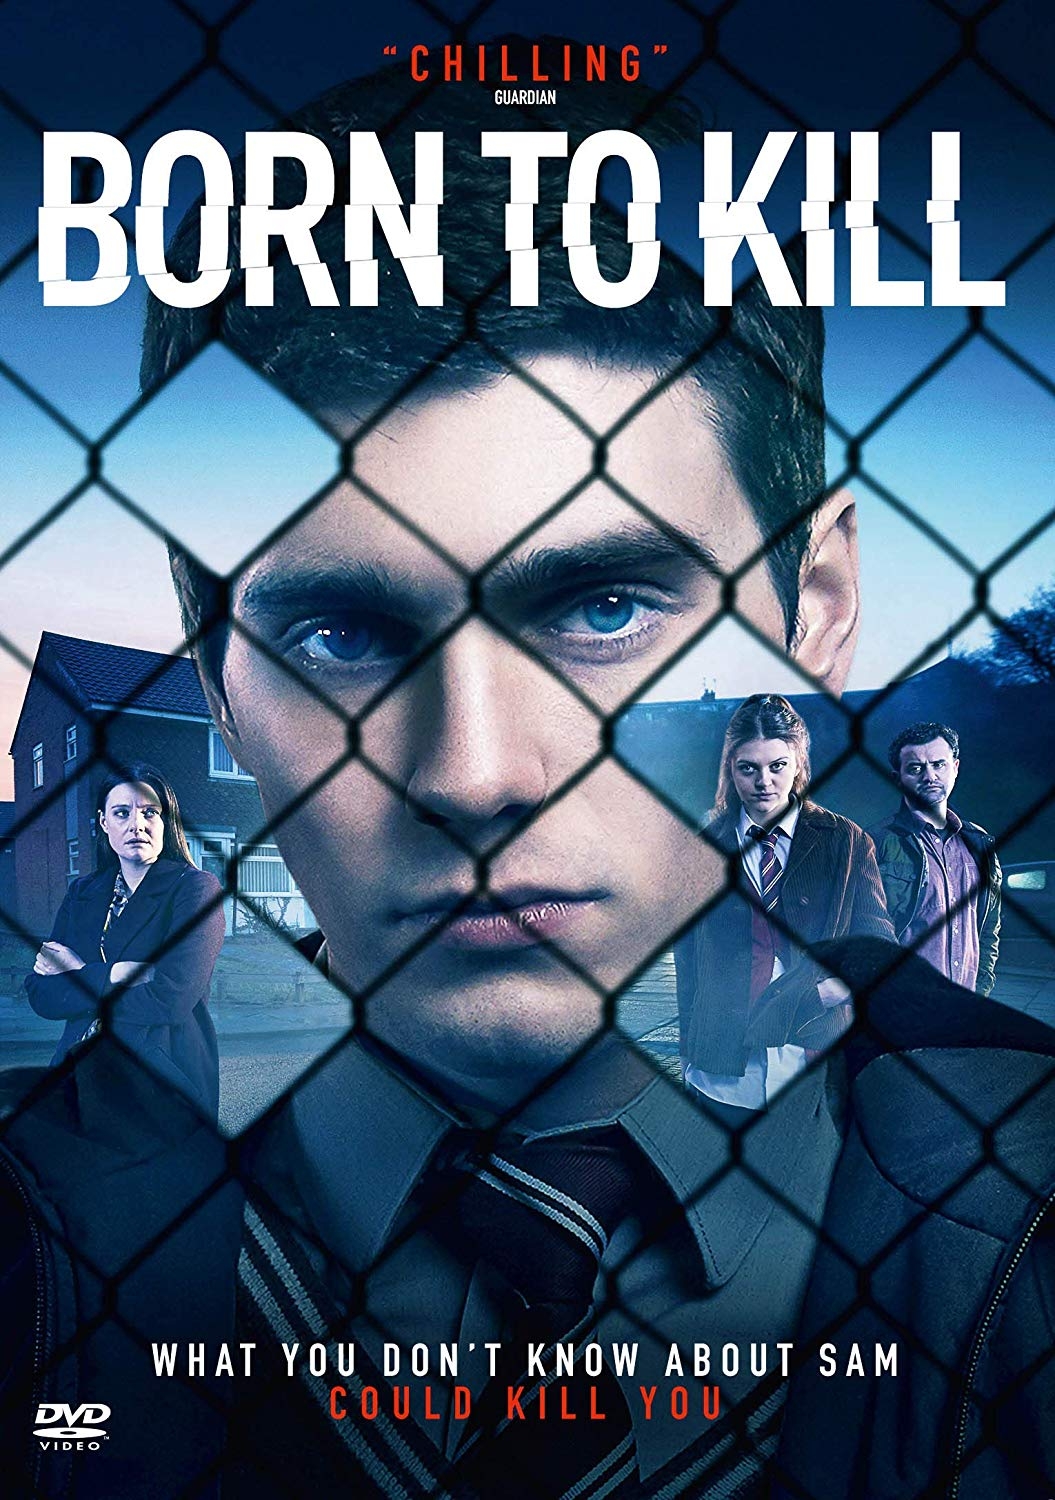 Born to kill, season 1 [DVD] (2017).